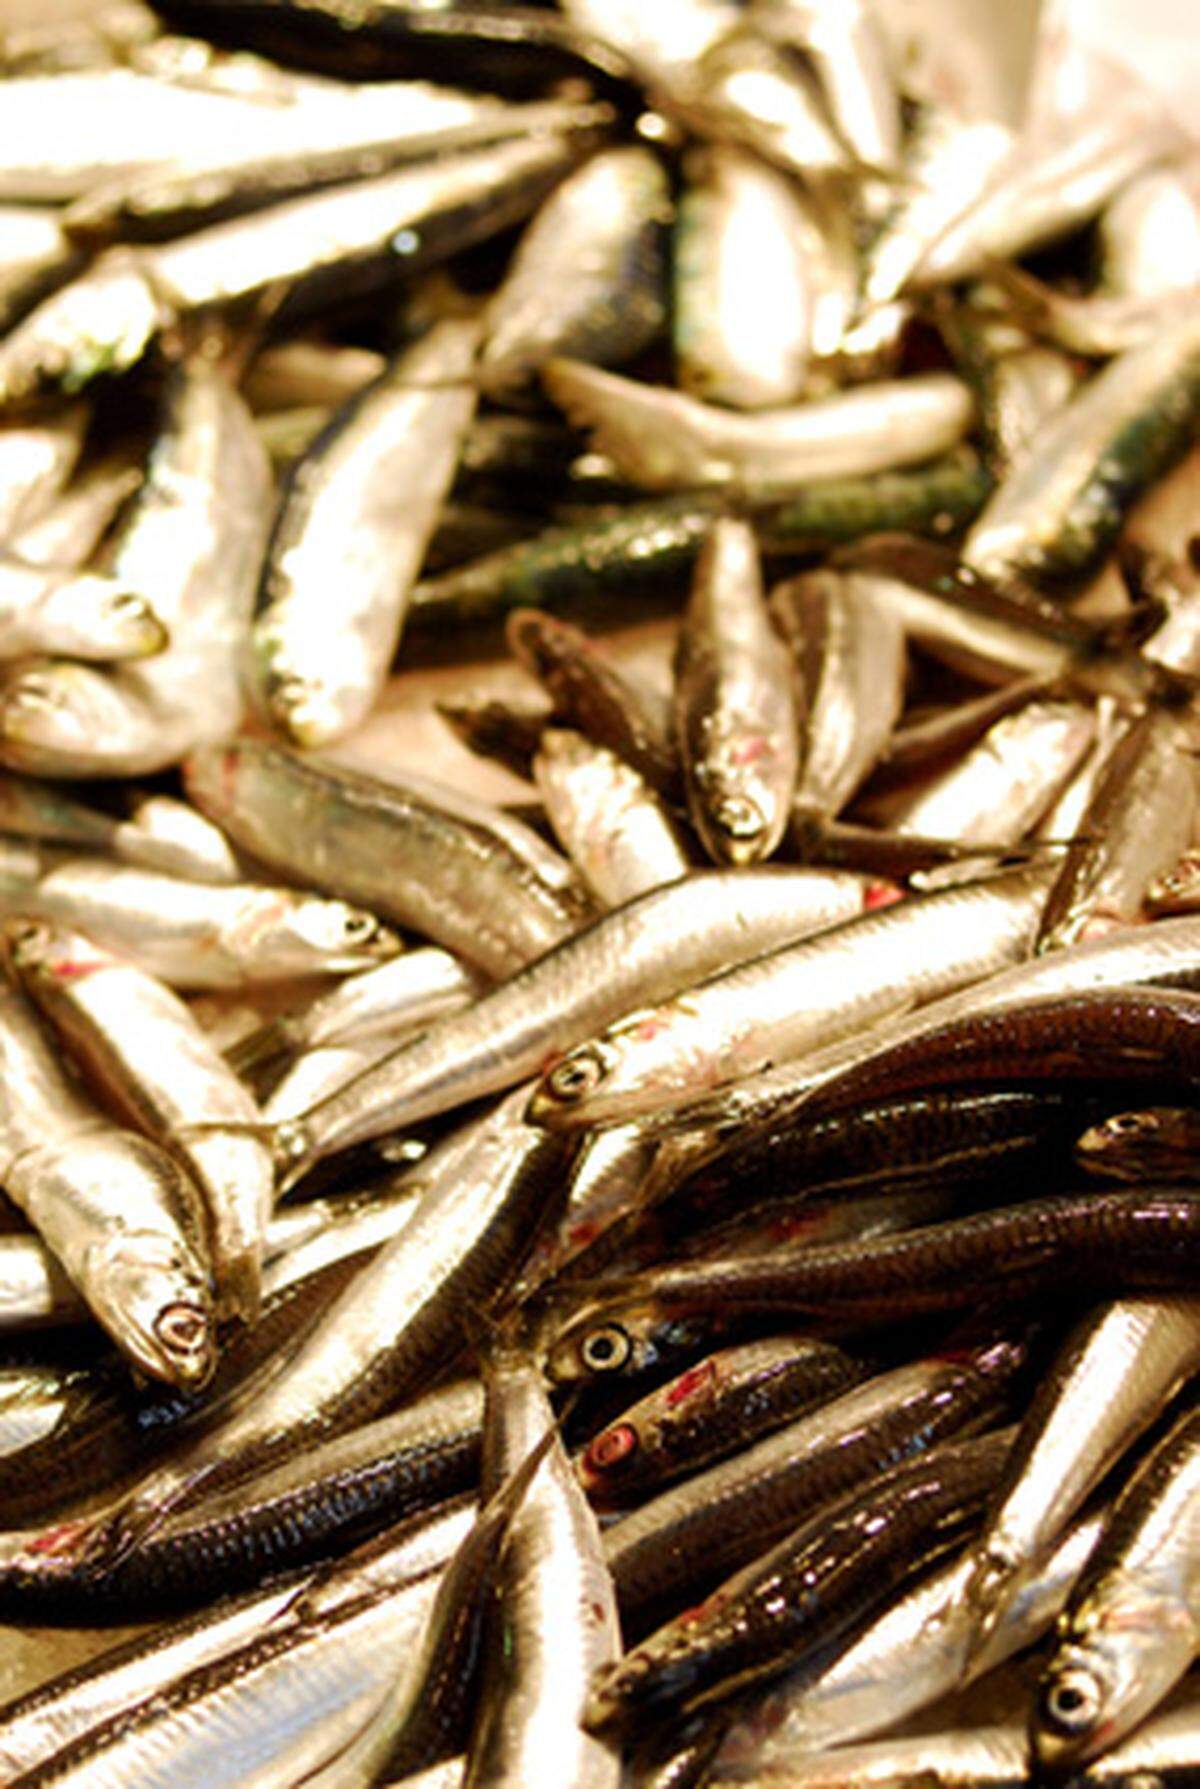 Die Inhaltsstoffe von fettreichem Fisch schützen möglicherweise vor Krebs. Laborstudien der Universität Jena deuten darauf hin, dass der regelmäßiger Konsum der darin enthaltenen ungesättigten Fettsäuren das Tumorrisiko senkt. Der Fischkonsum aktivierte Gene, die die Bildung von Enzymen anregen, welche vor schädigenden Substanzen schützen.